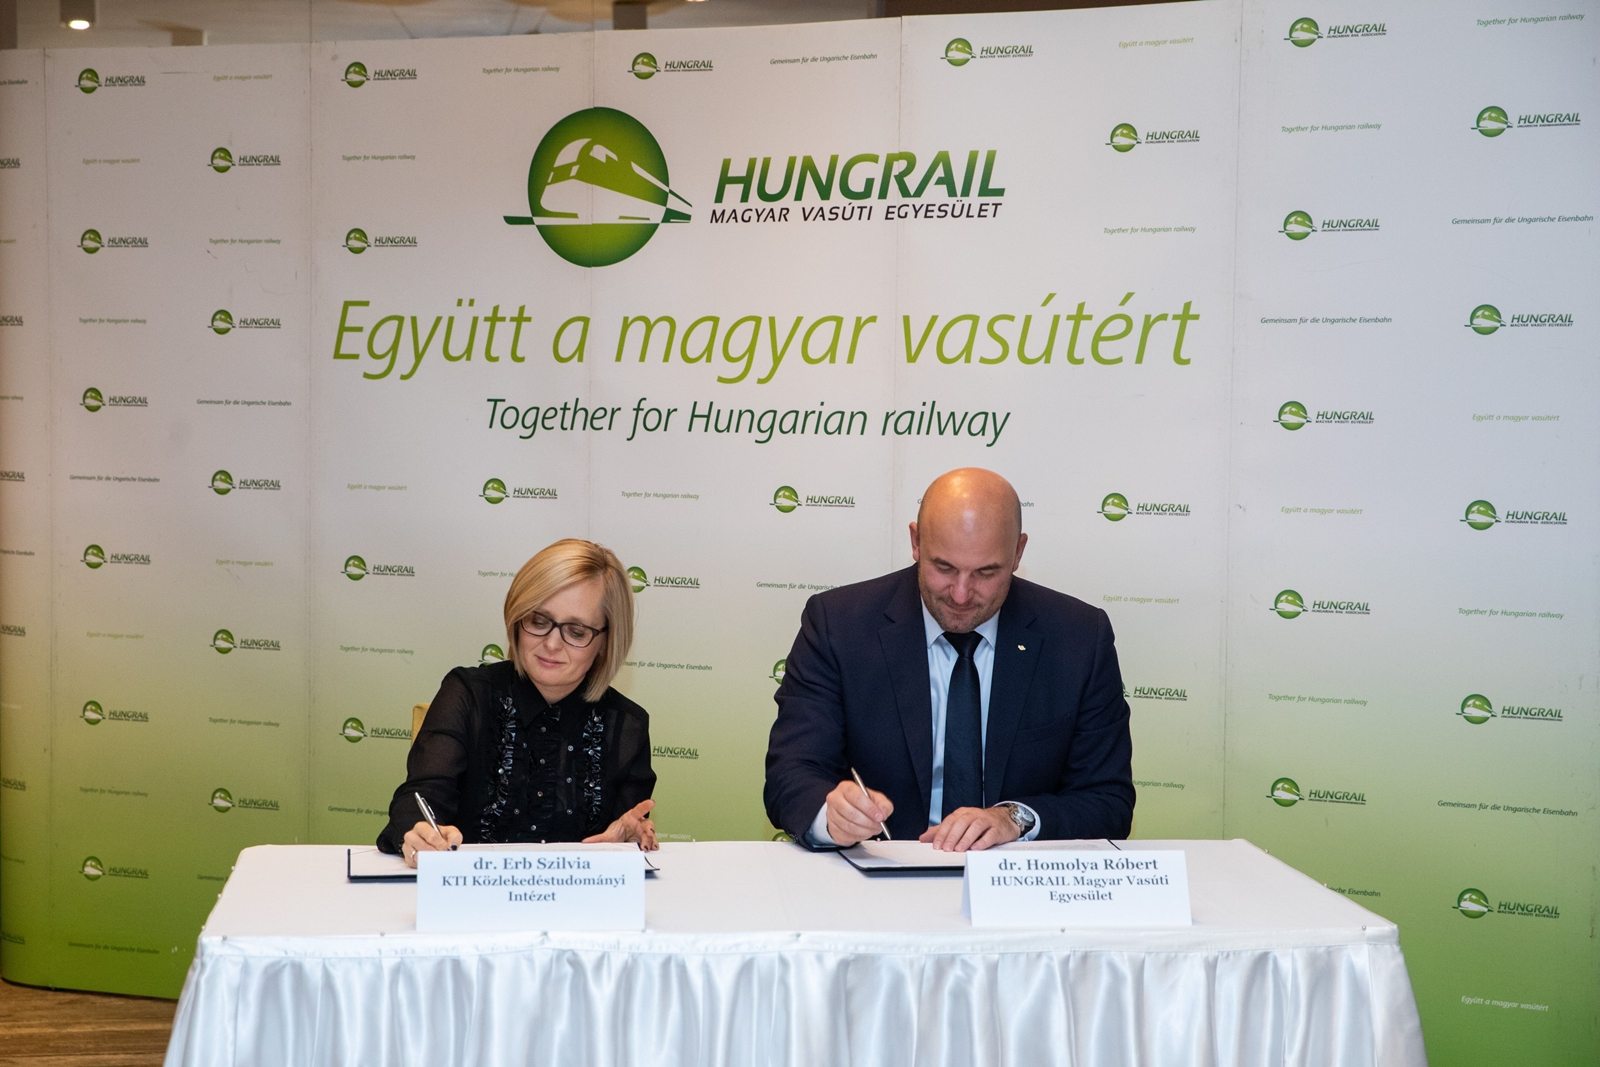 Együttműködési megállapodást kötött a Hungrail és a KTI Közlekedéstudományi Intézet (fotó: Hungrail)